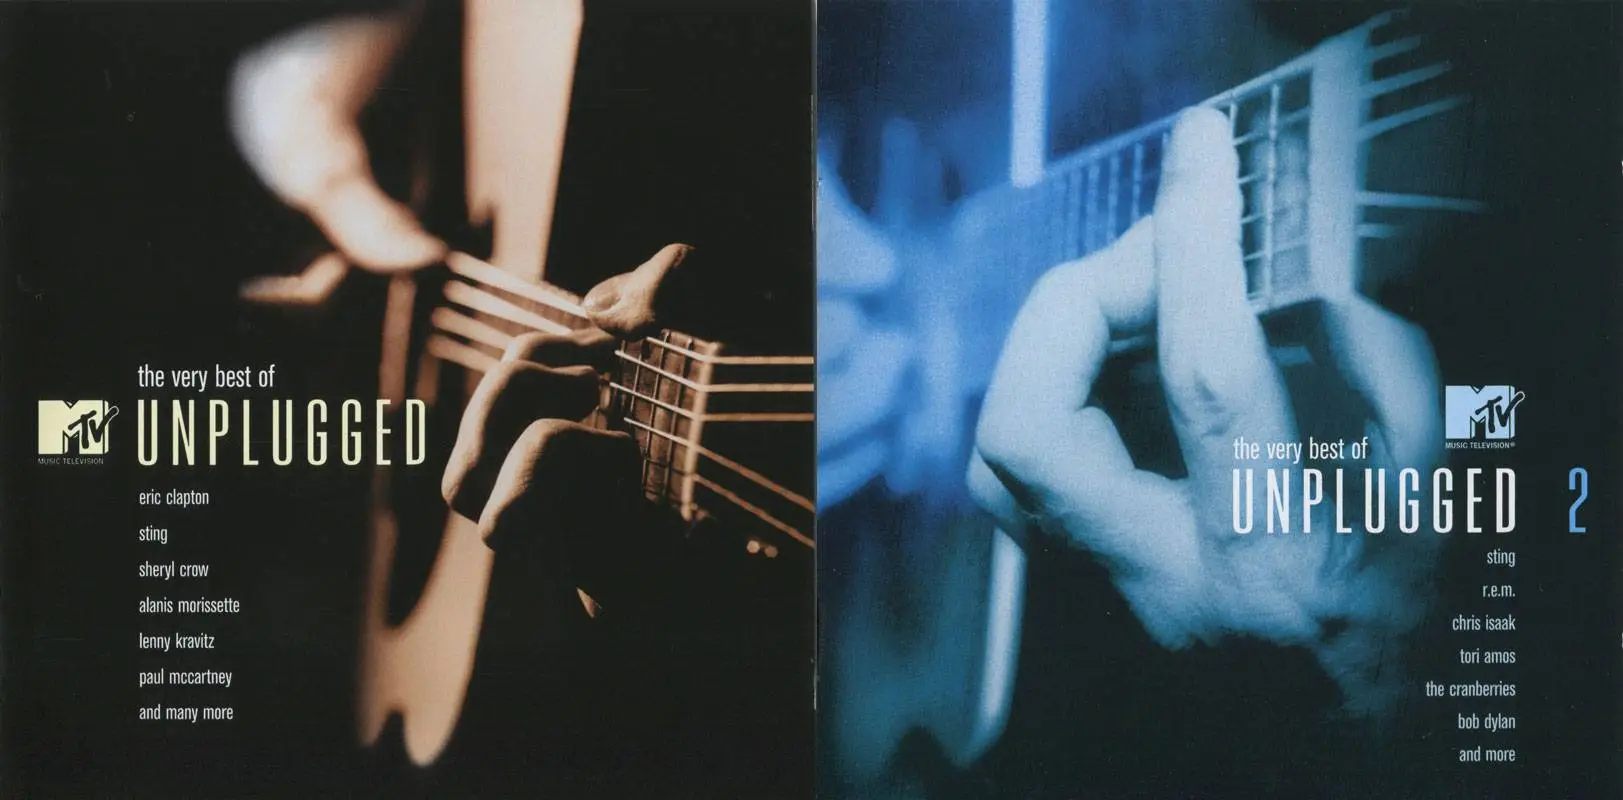 Ай вери вери песня. The very best of MTV Unplugged. Staind - MTV Unplugged (2002). 2003 - Анплаггед.